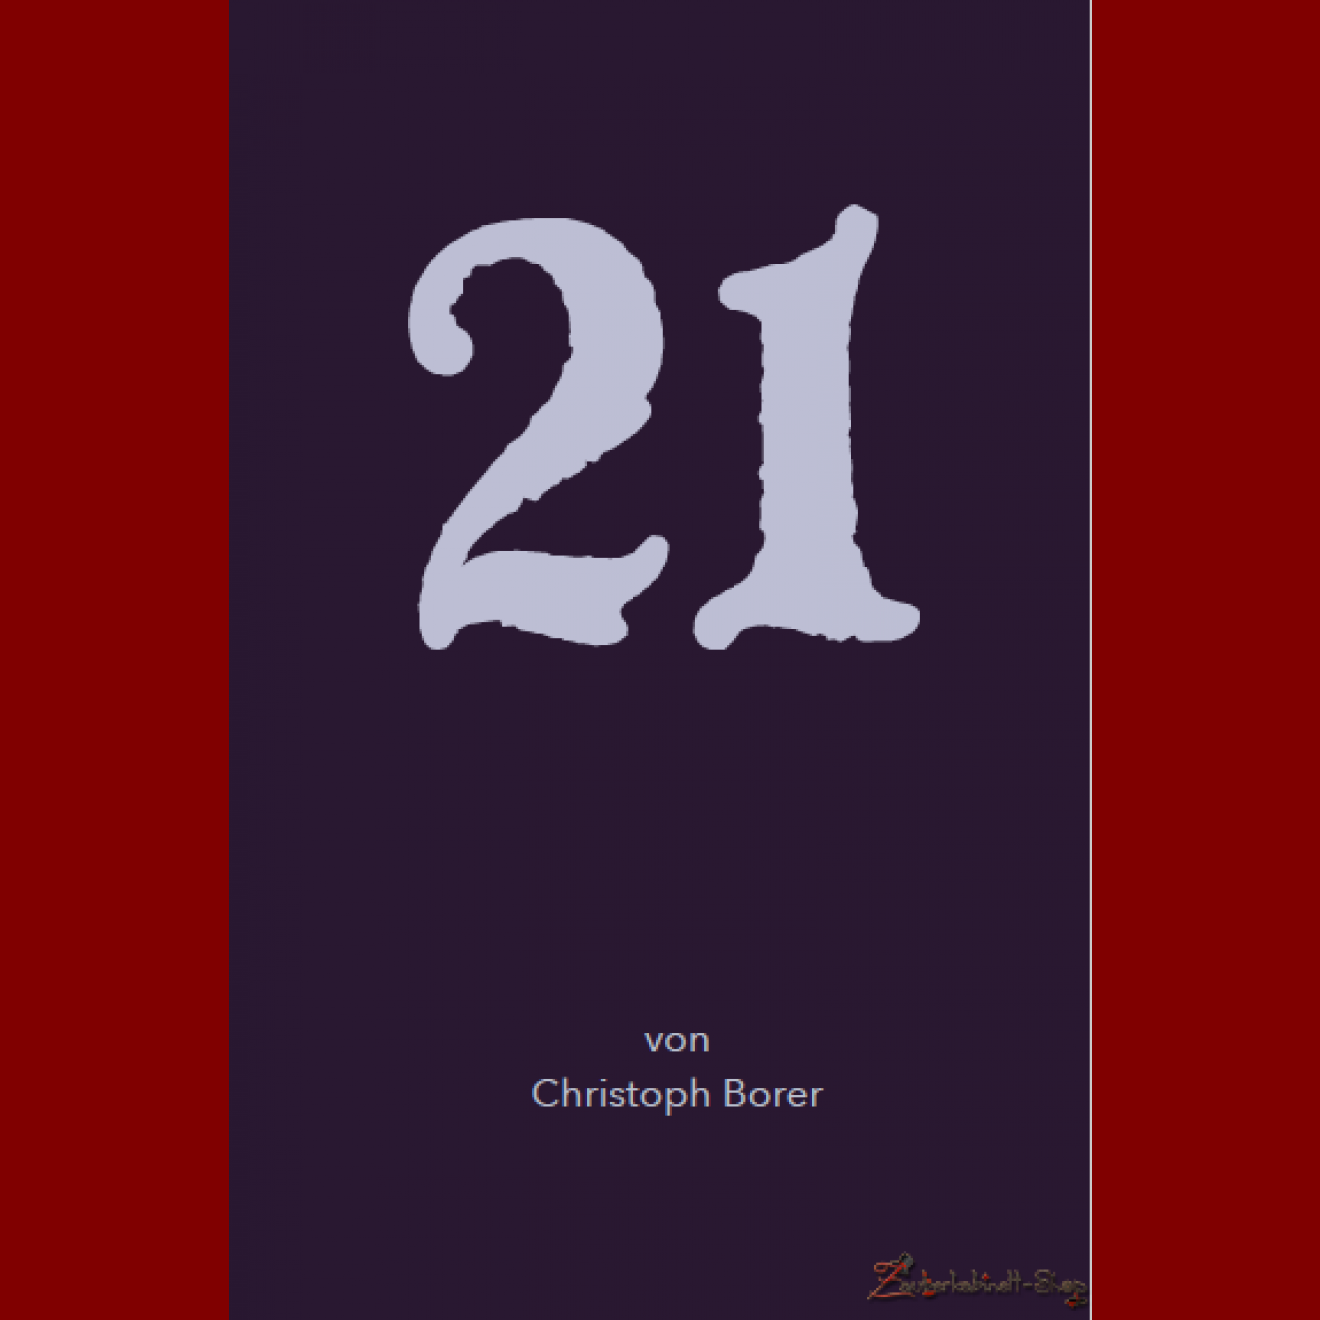 21 v. Christoph Borer